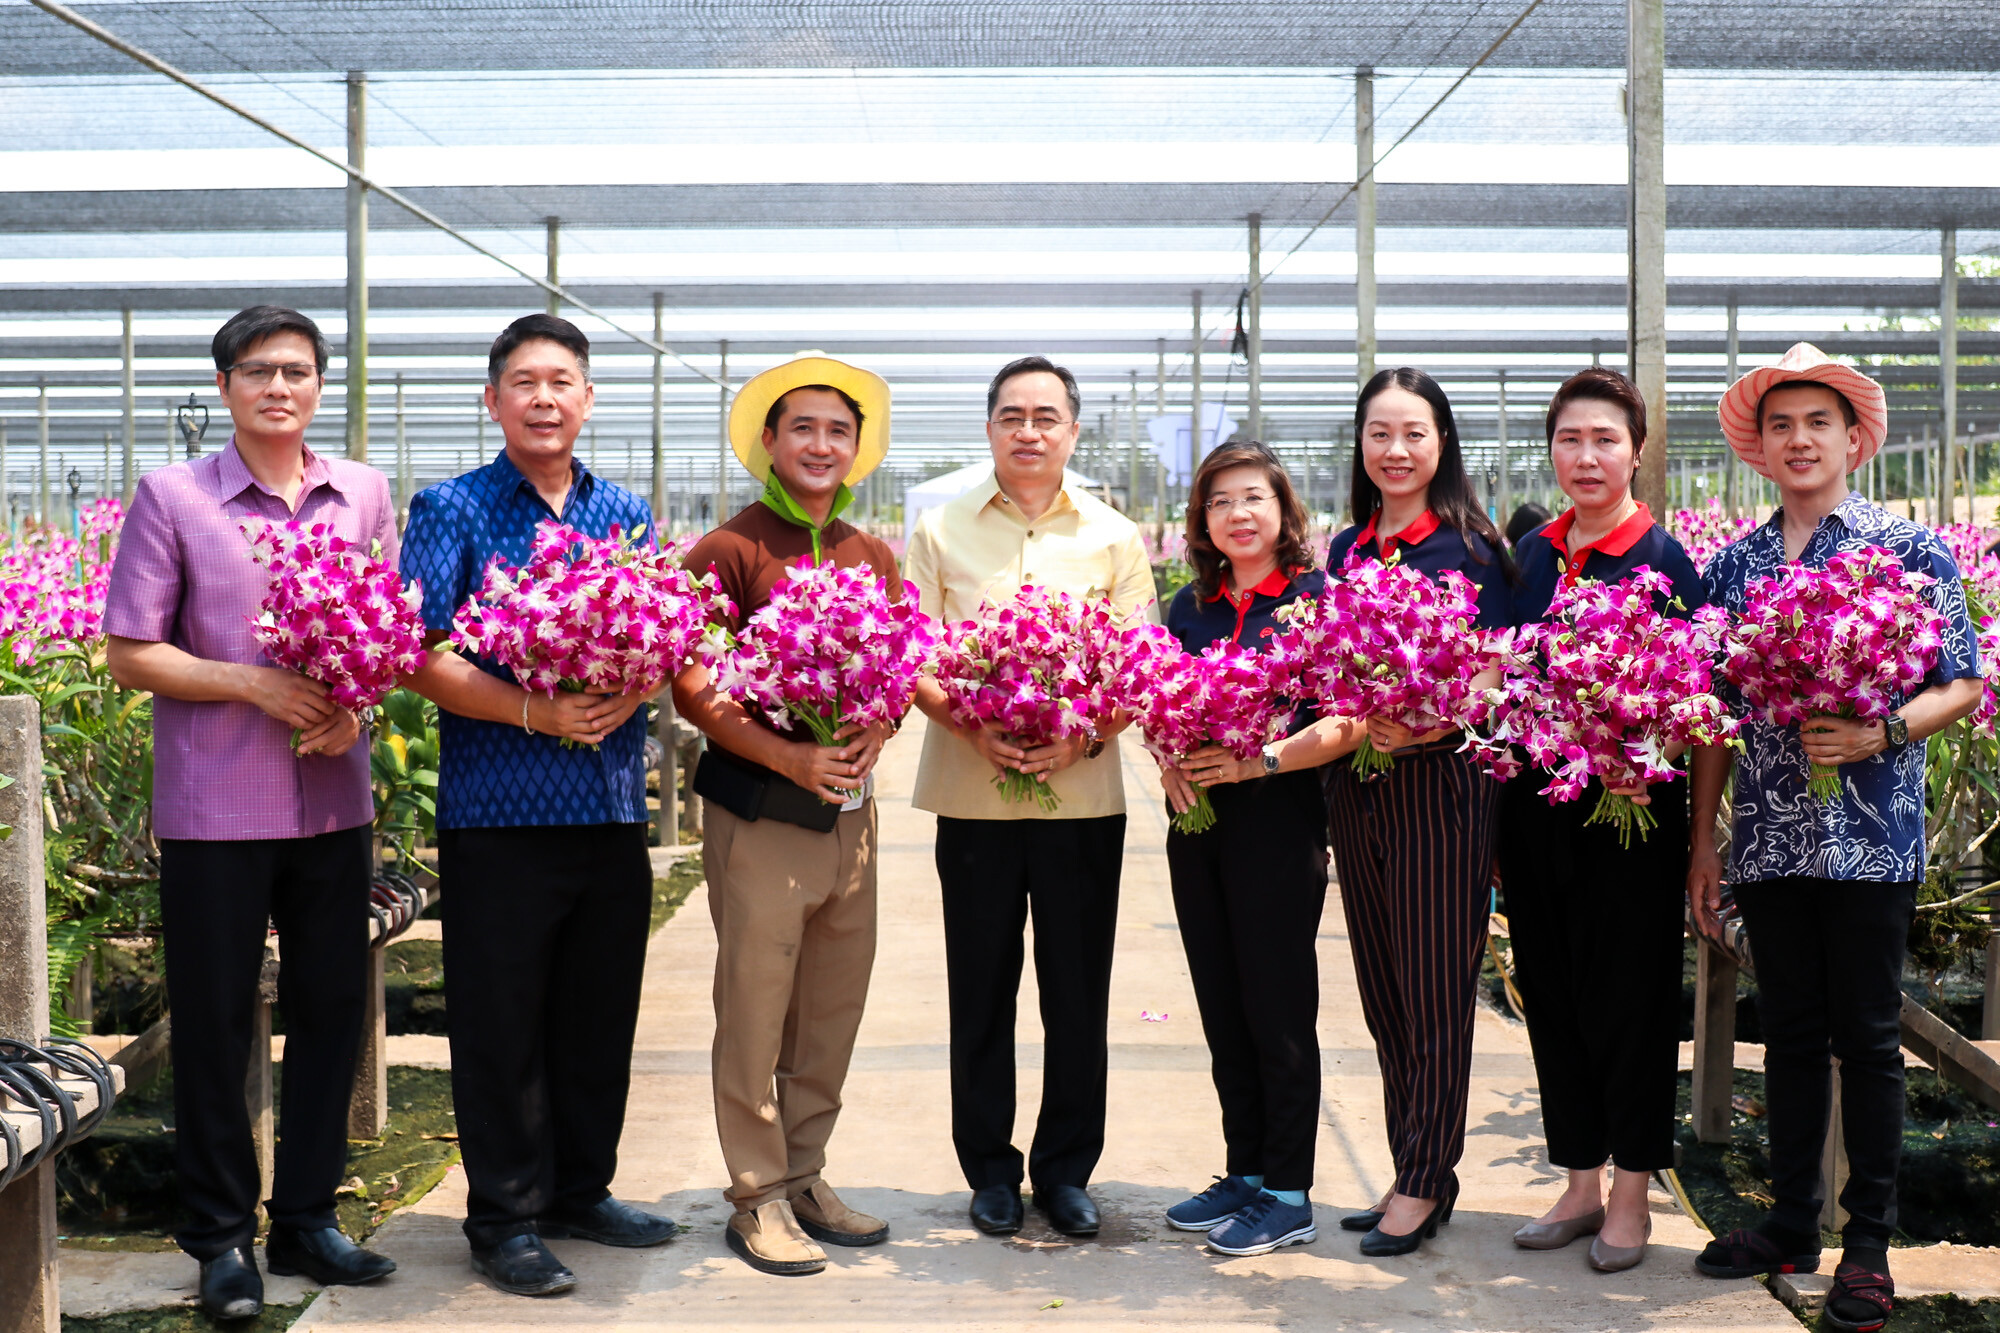 “เซ็นทรัลพัฒนา” หนุนเศรษฐกิจไทย เปิดพื้นที่ฟรีช่วยเกษตรกร ชวนไทยอุดหนุนไทย ช้อป & ชมกล้วยไม้ พร้อมเตรียมแผนช่วยผู้ประกอบการอีกหลายรายทั่วประเทศ